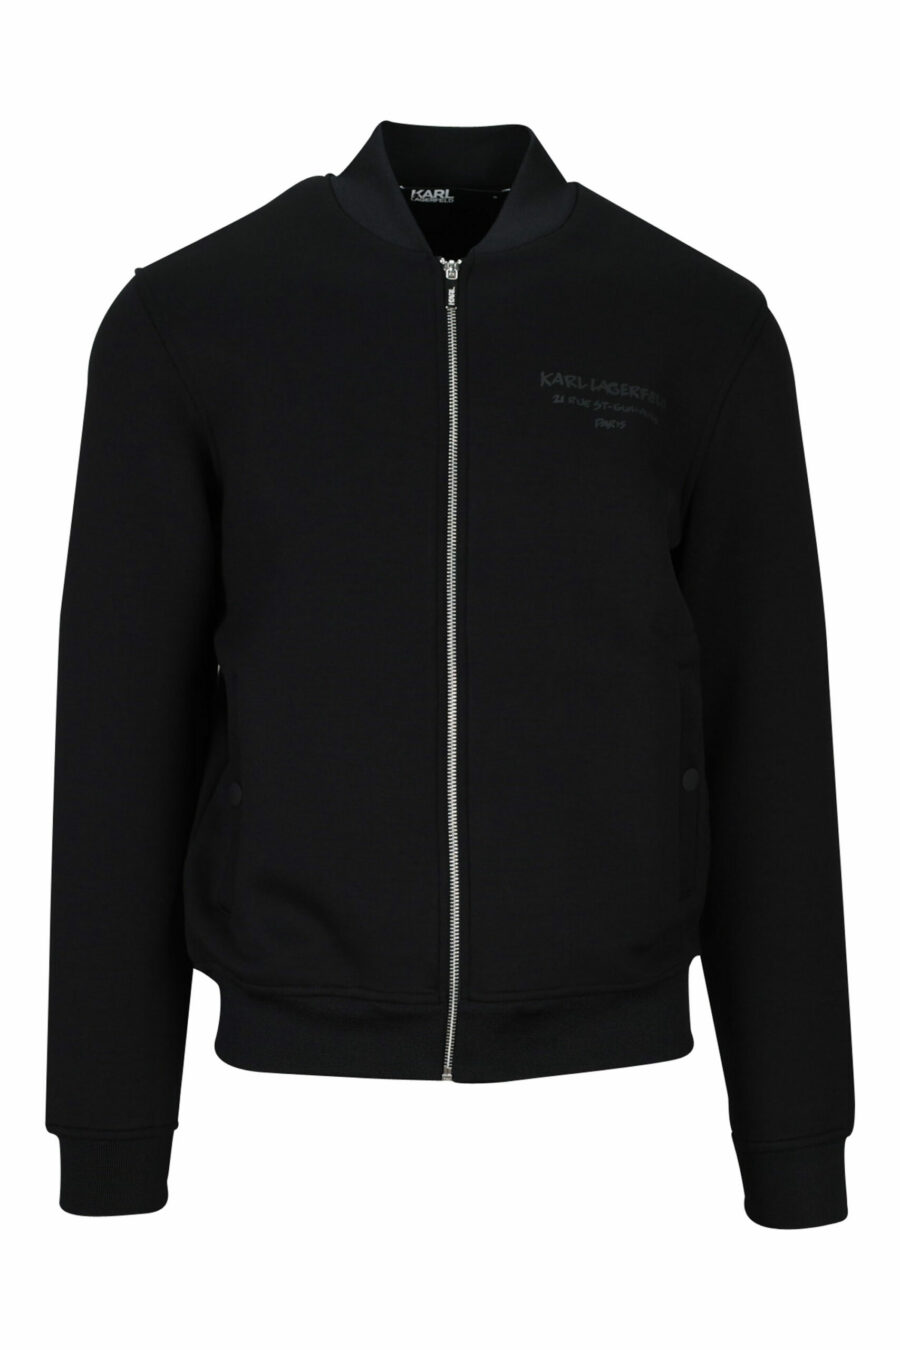 Sweatshirt noir avec fermeture éclair et mini logo - 4062226395656